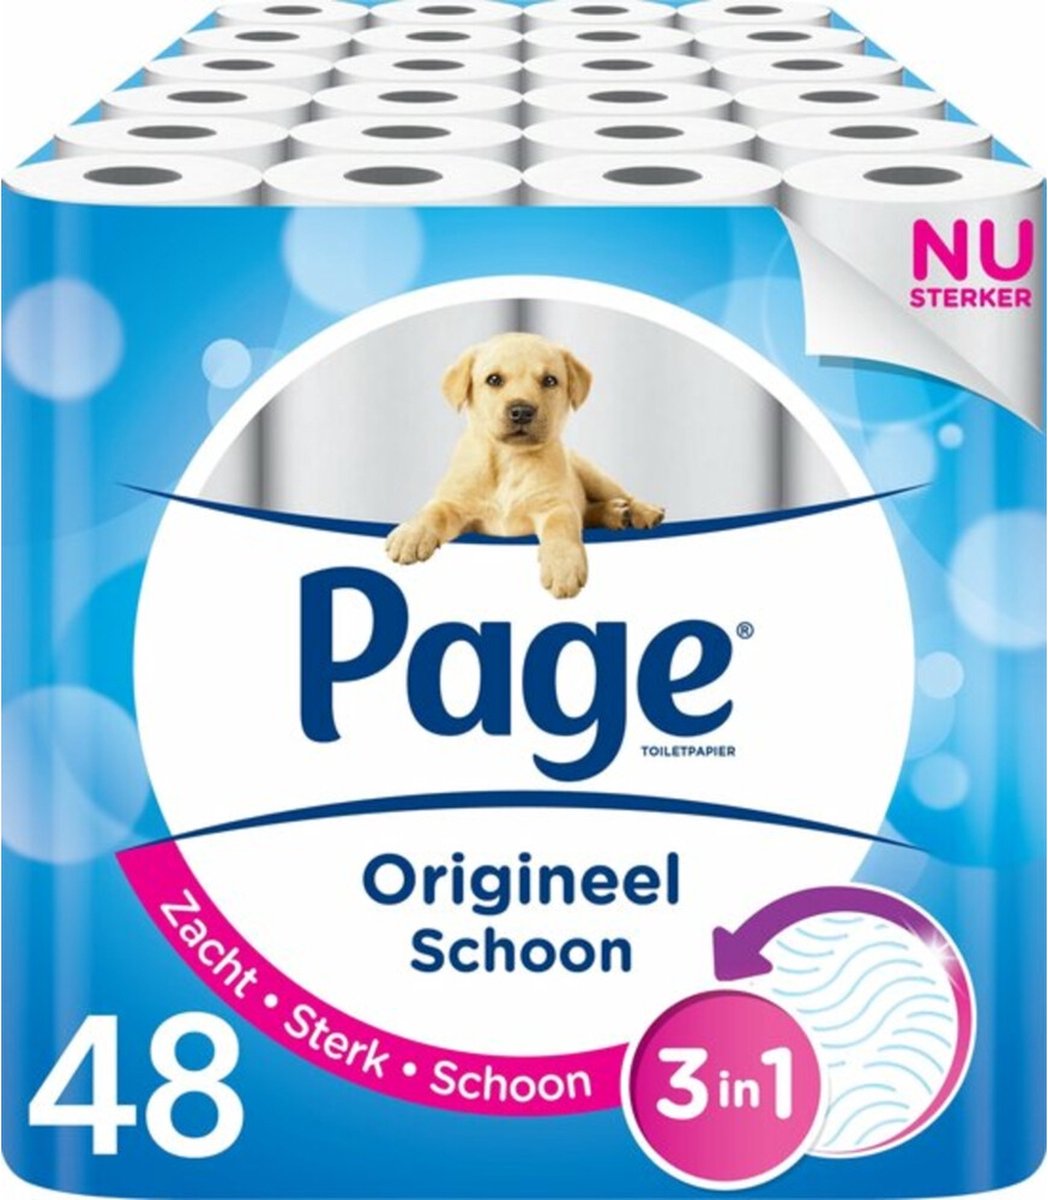 Page toiletpapier - Compleet Schoon - 48 rollen - Page